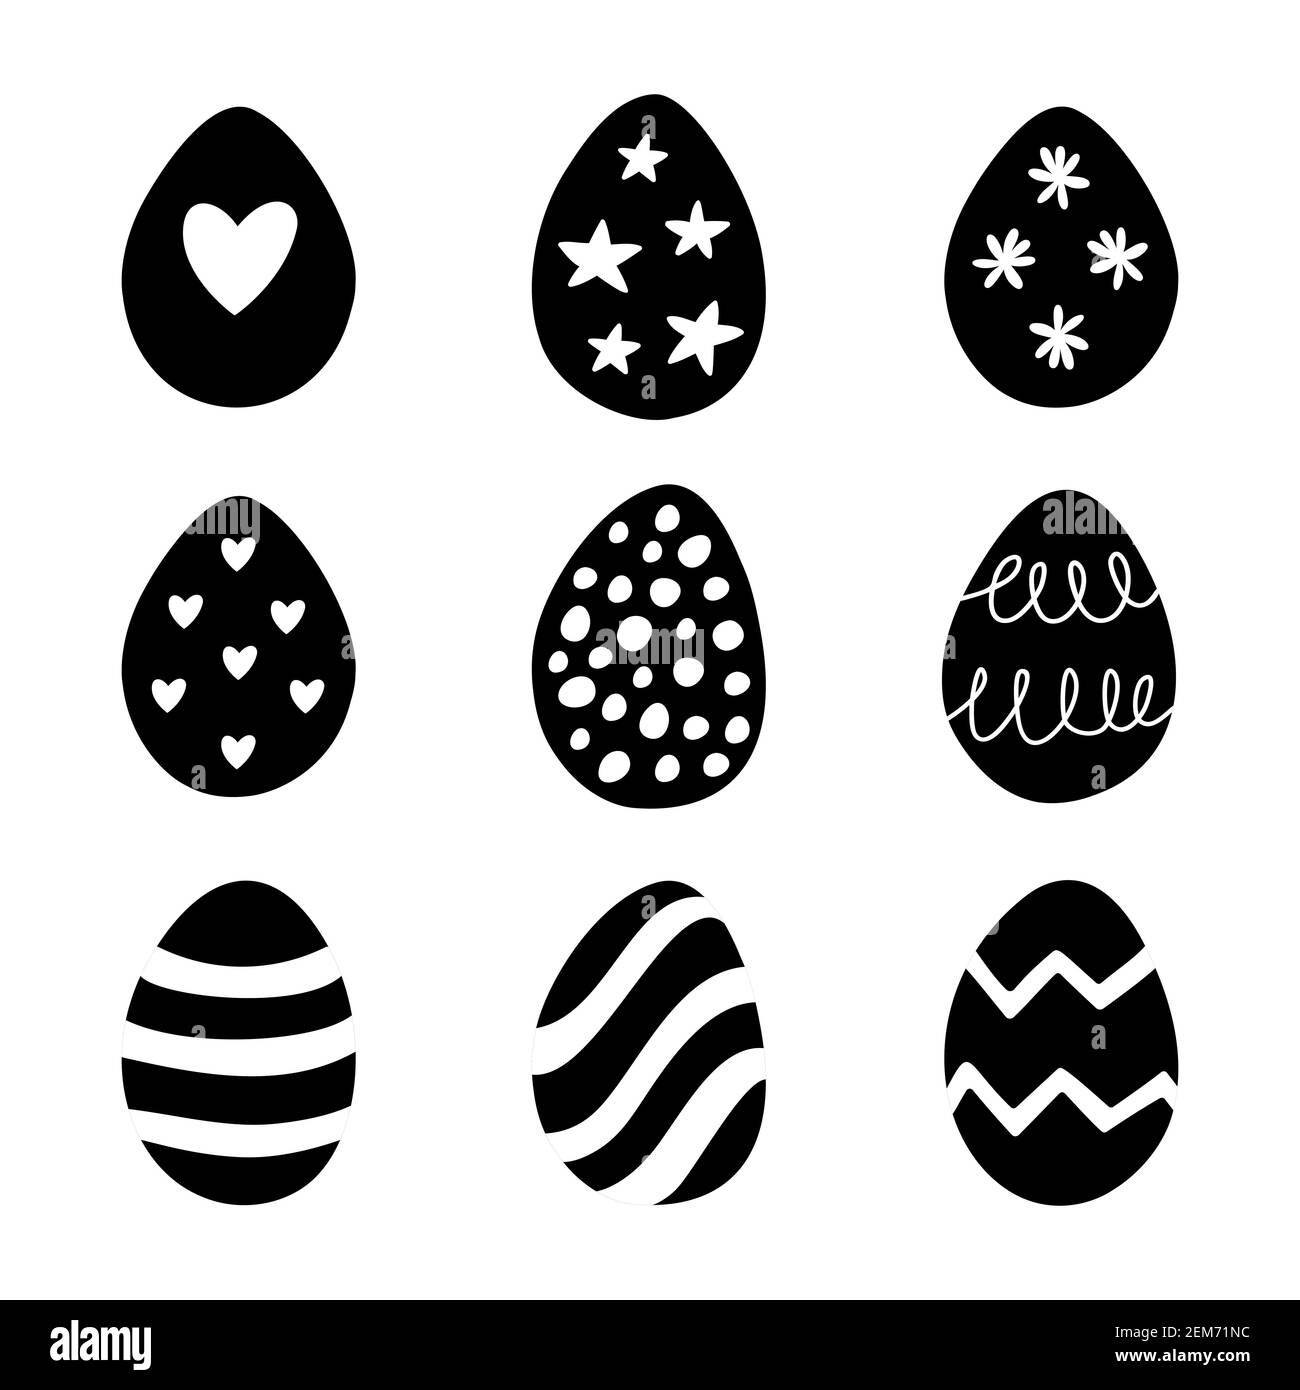 Ostern Set von Doodle Eier Illustrationen isoliert auf einem weißen Hintergrund. Stock Vektor